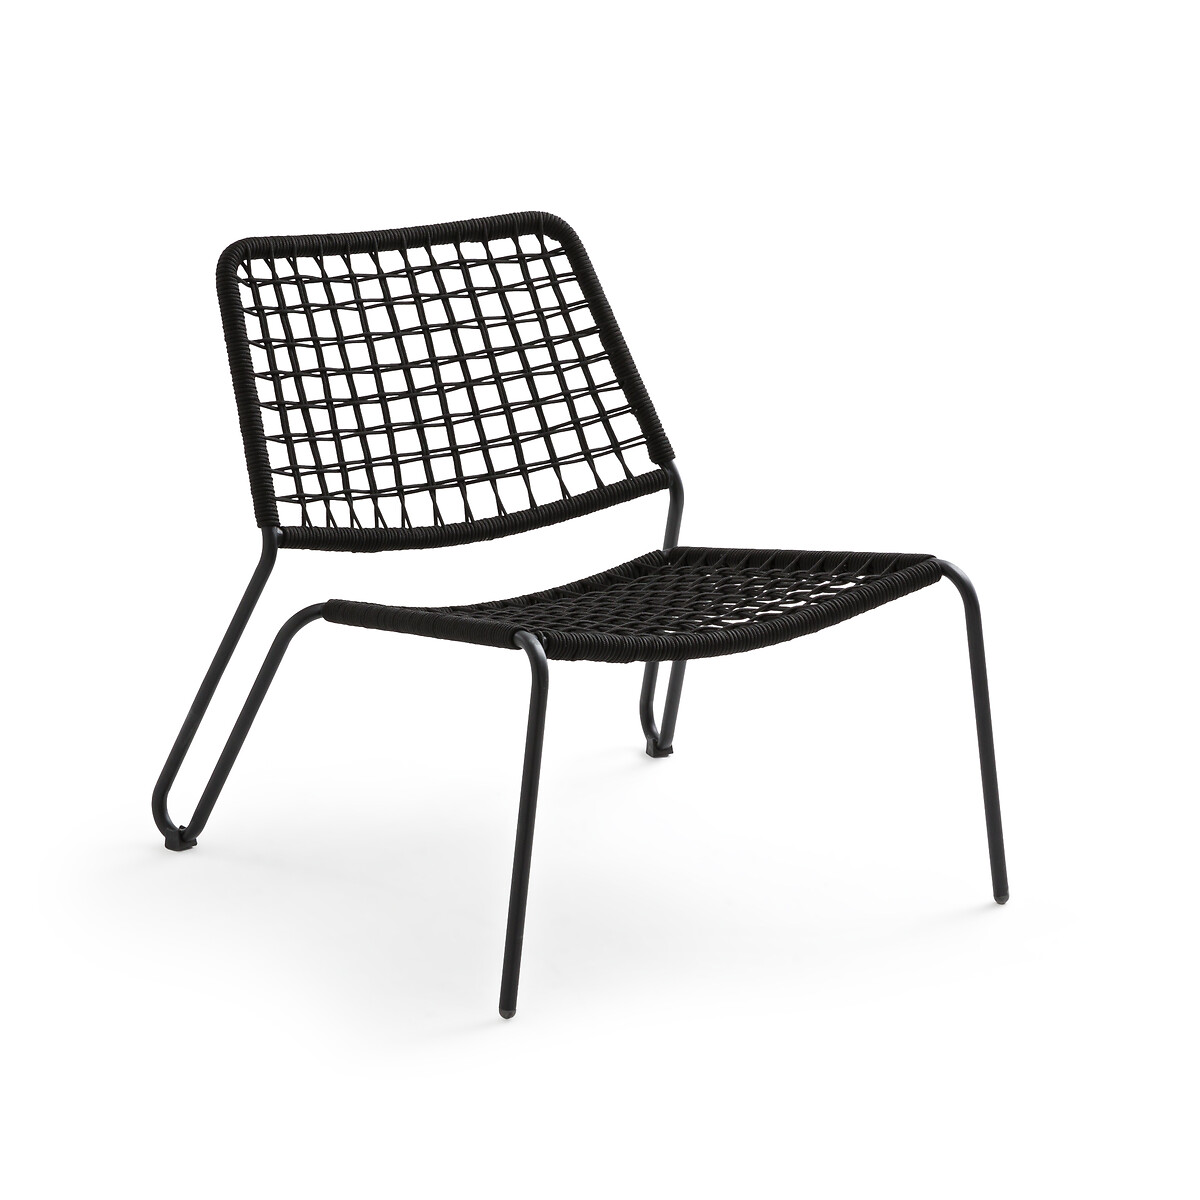 Кресло садовое низкое из металла и плетеной веревки Masix единый размер черный кресло садовое из металла wallace единый размер черный